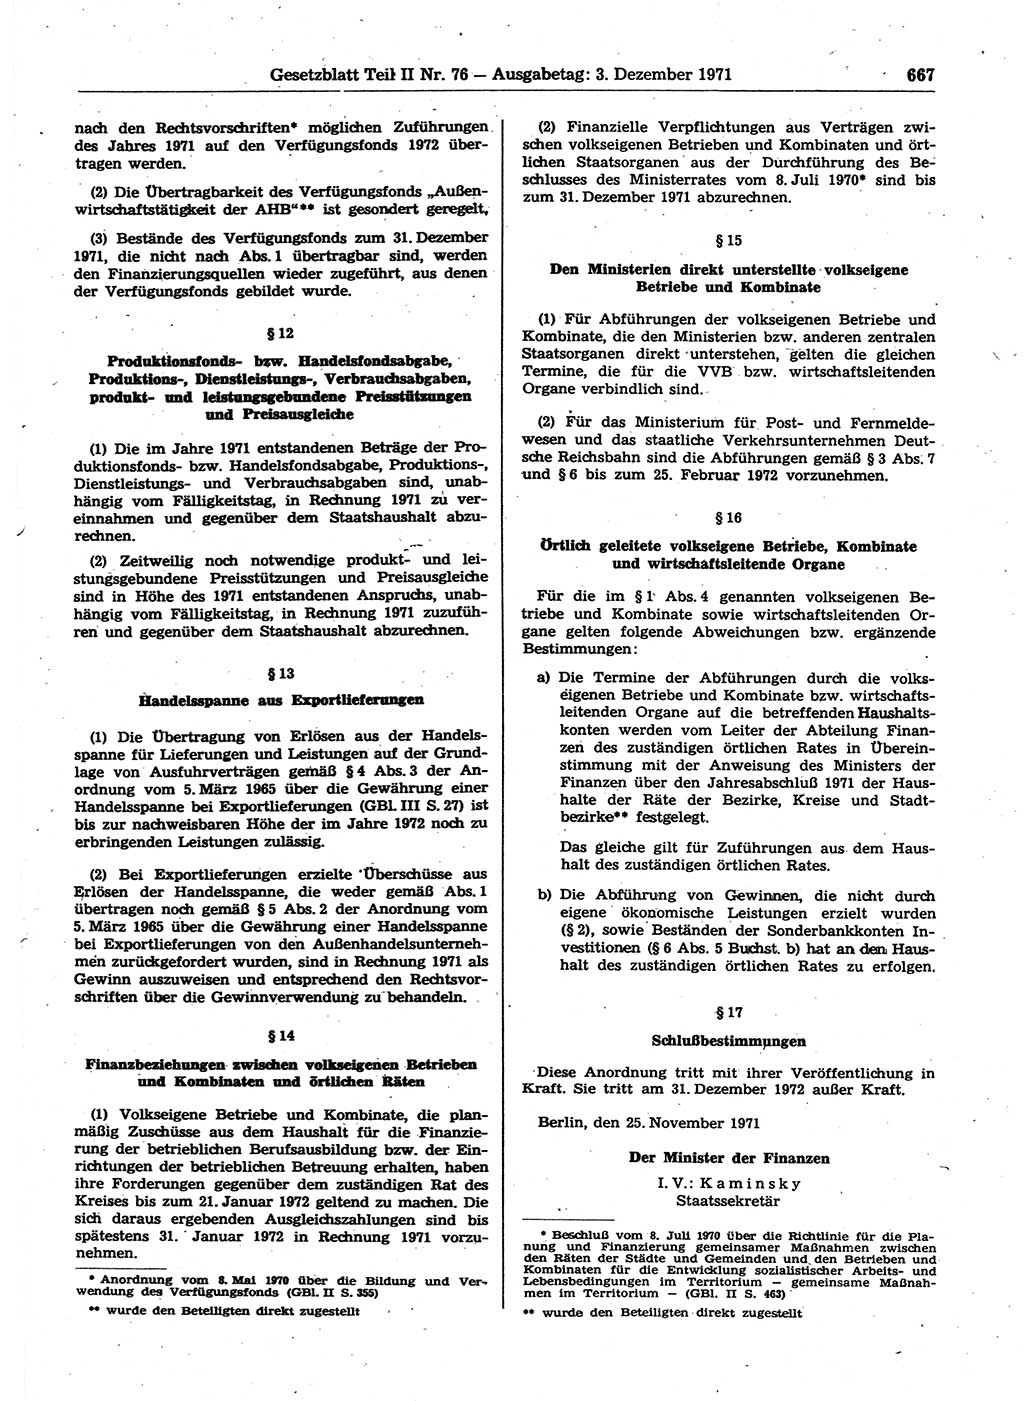 Gesetzblatt (GBl.) der Deutschen Demokratischen Republik (DDR) Teil ⅠⅠ 1971, Seite 667 (GBl. DDR ⅠⅠ 1971, S. 667)